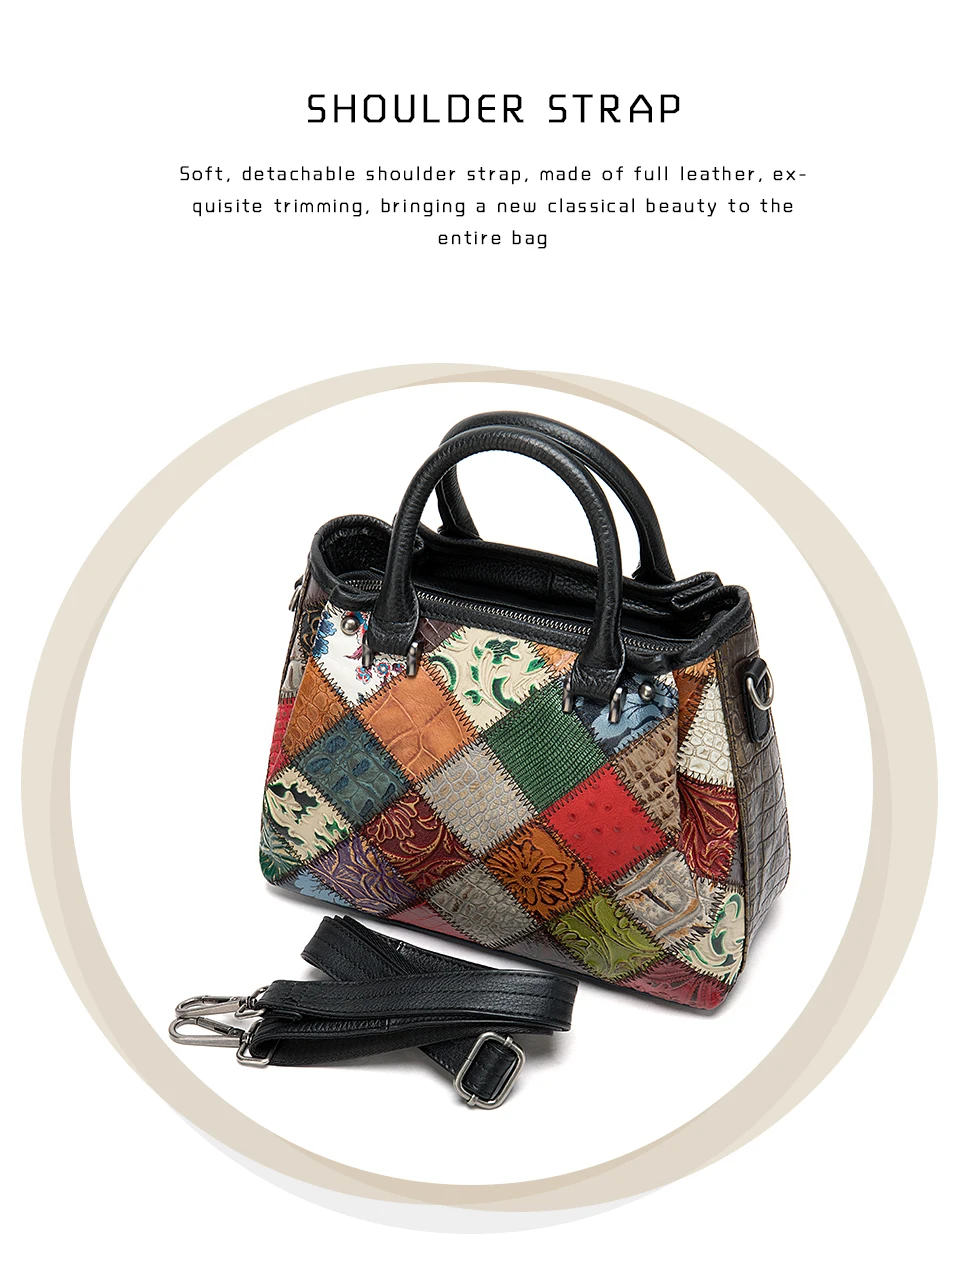 WESTAL, женская сумка из натуральной кожи, большая сумка для женщин, сумки через плечо, Лоскутная Дизайнерская кожаная сумка, женские сумки, 203